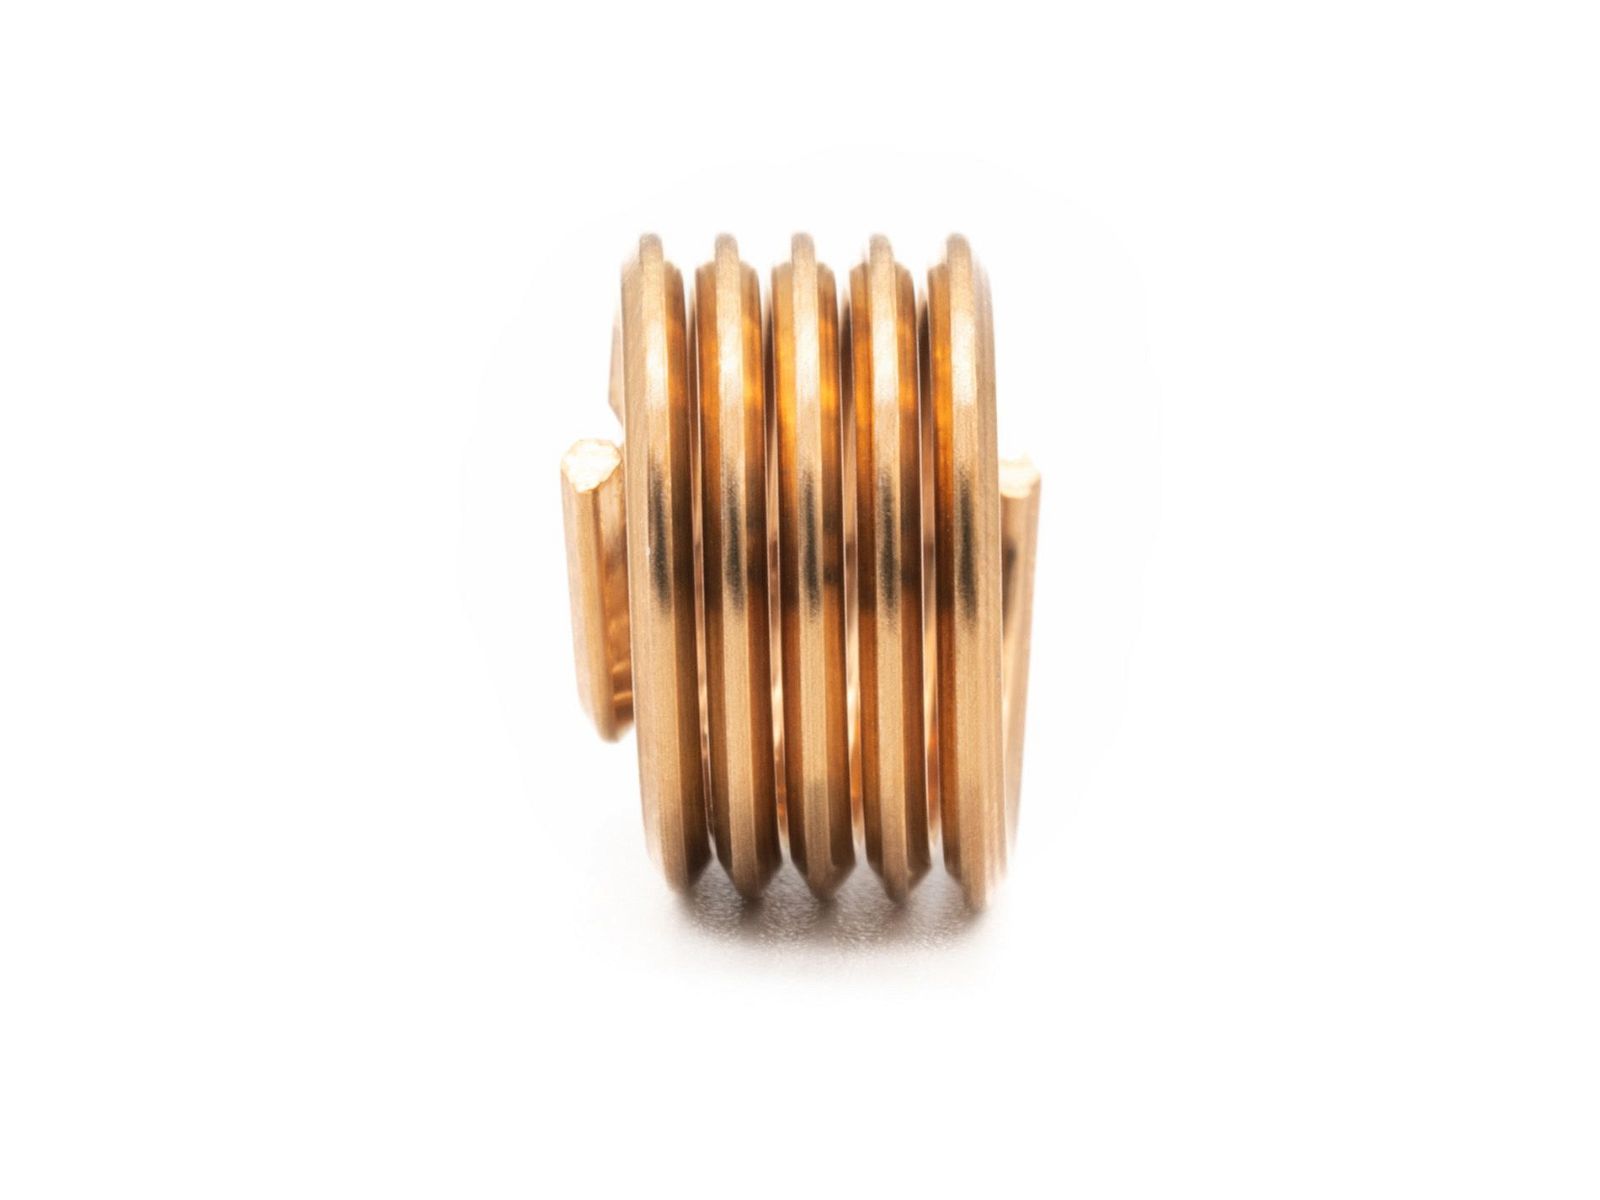 BaerCoil Drahtgewindeeinsätze M 8 x 1,25 - 1,0 D (8 mm) - frei durchlaufend - Bronze - 100 Stück